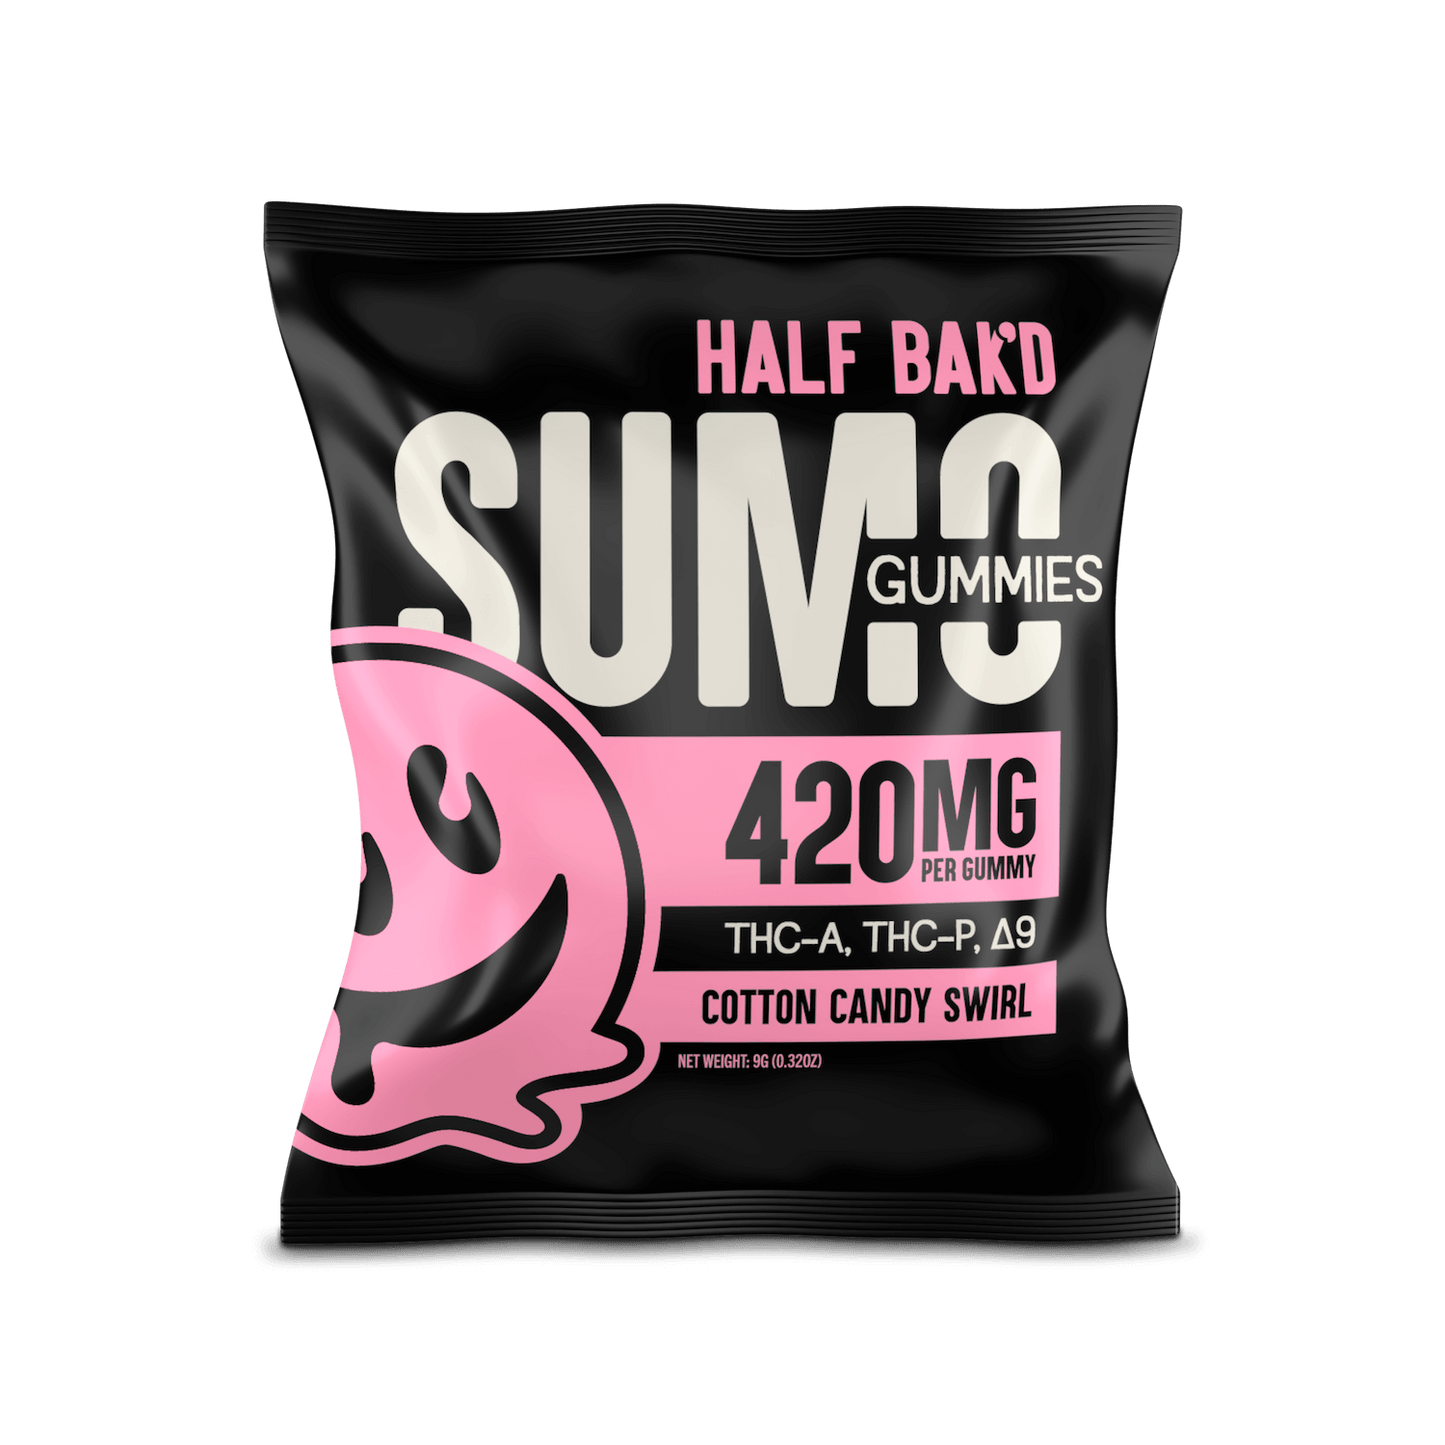 Half Bak’d Sumo Gummies | 2 Count